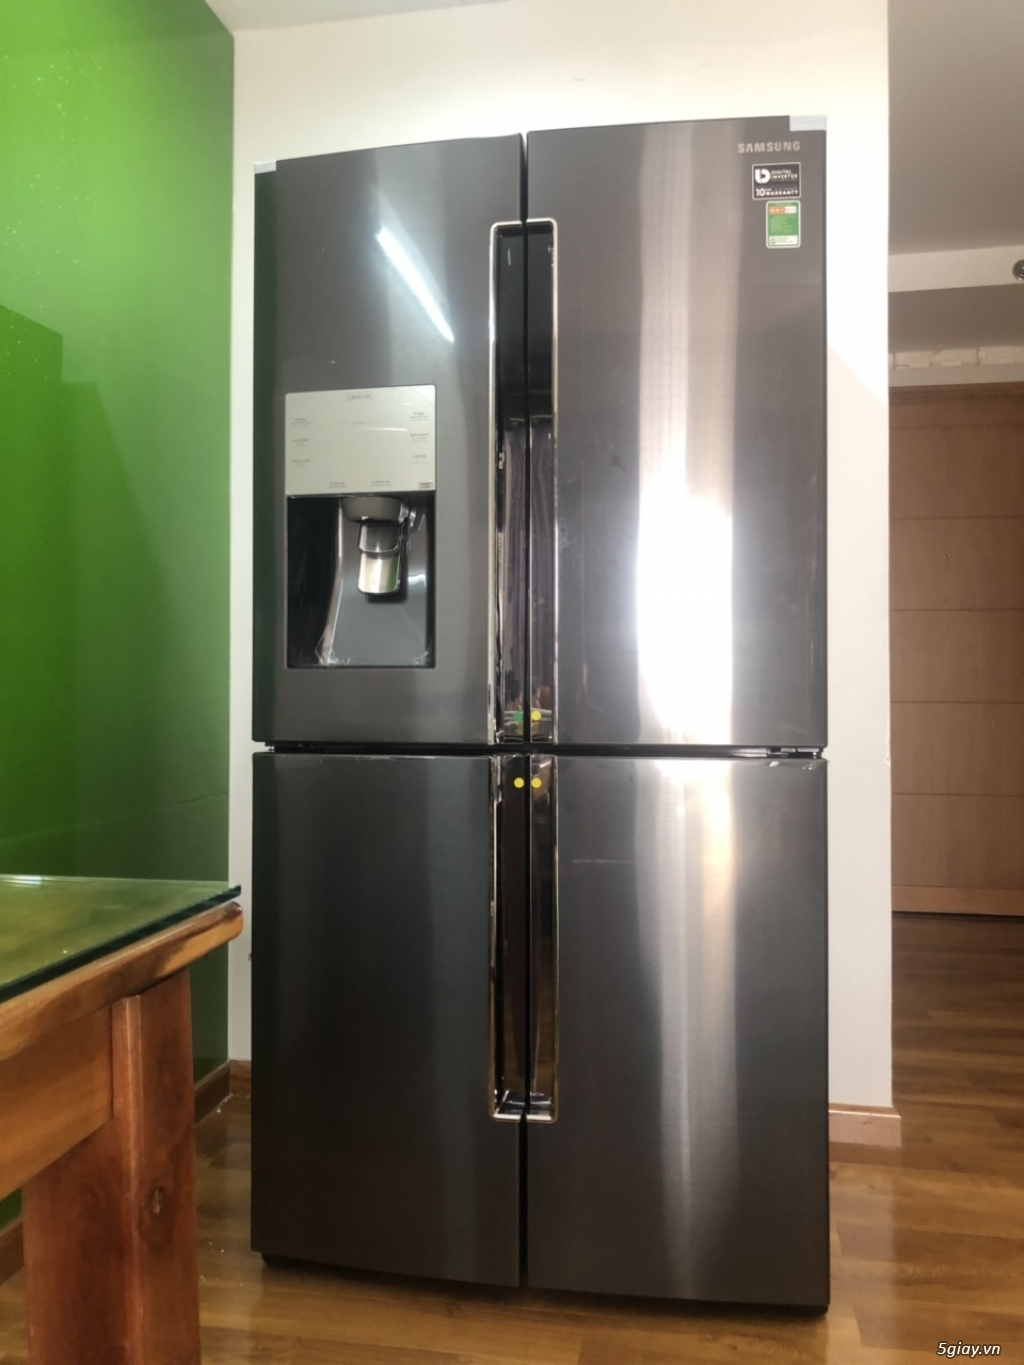 Thanh lý tủ lạnh SamSung Multidoor 644L (RF56K9041SG)